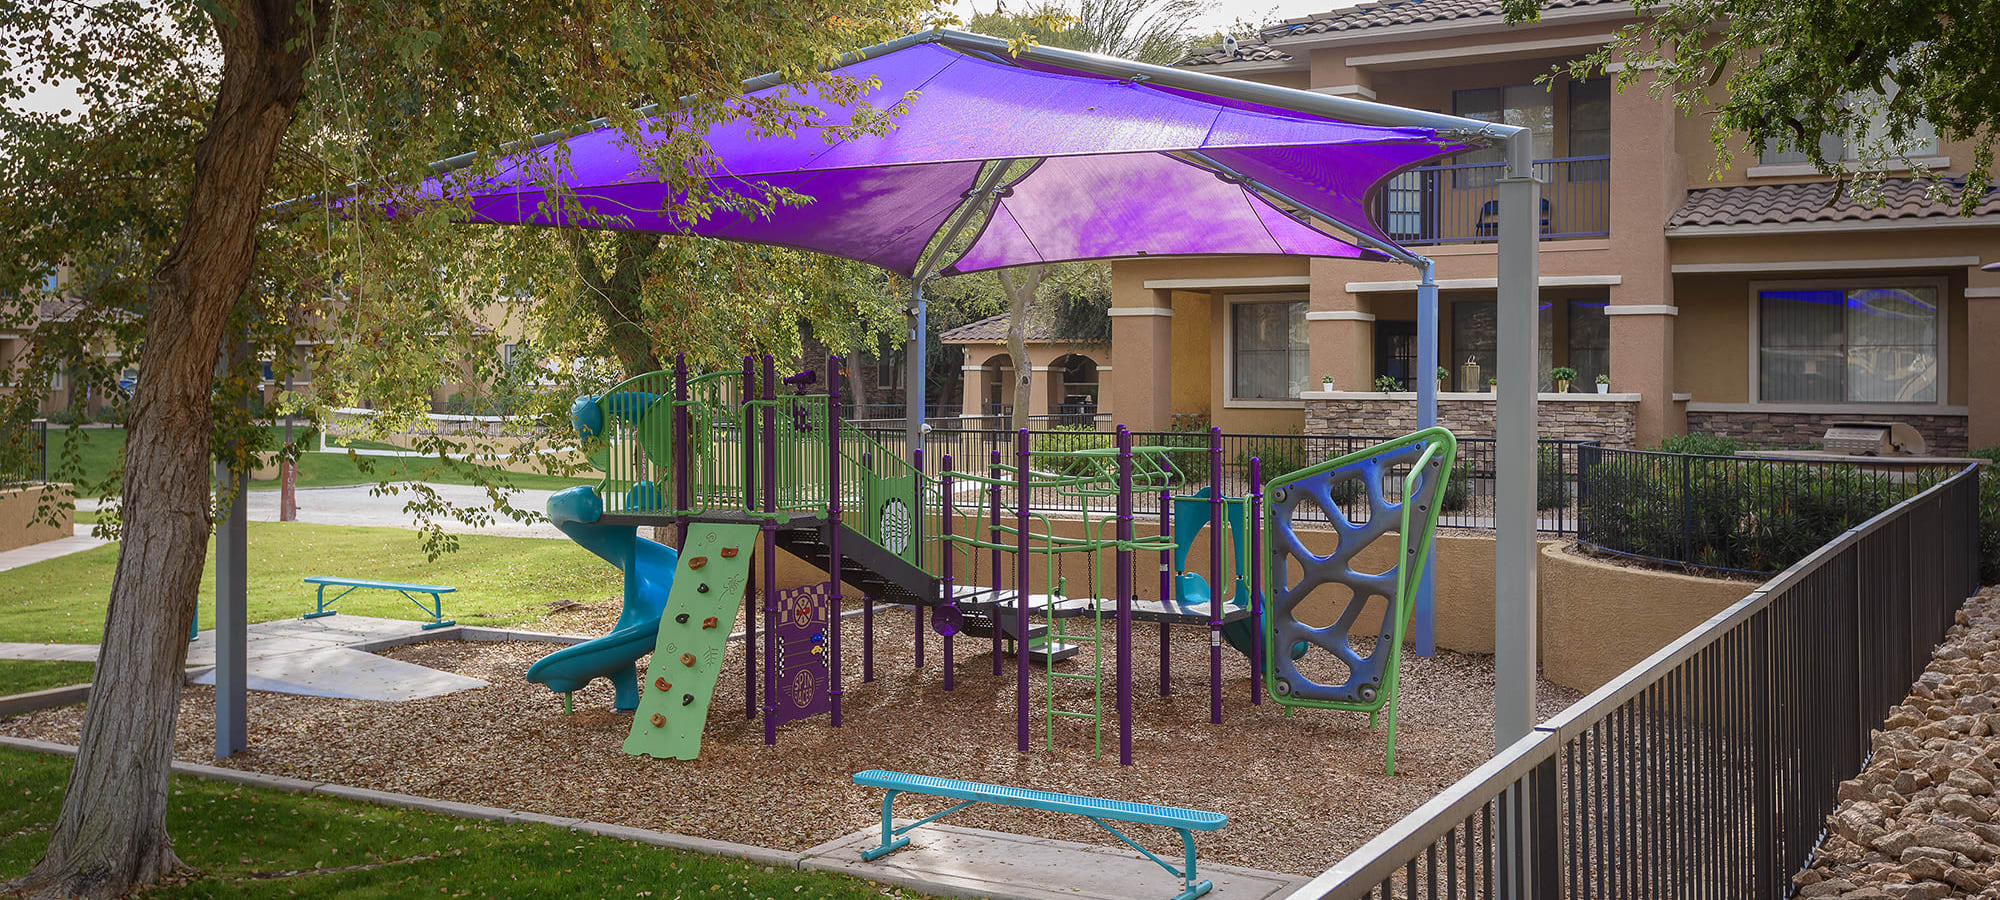 Playground at Stone Oaks in Chandler, Arizona